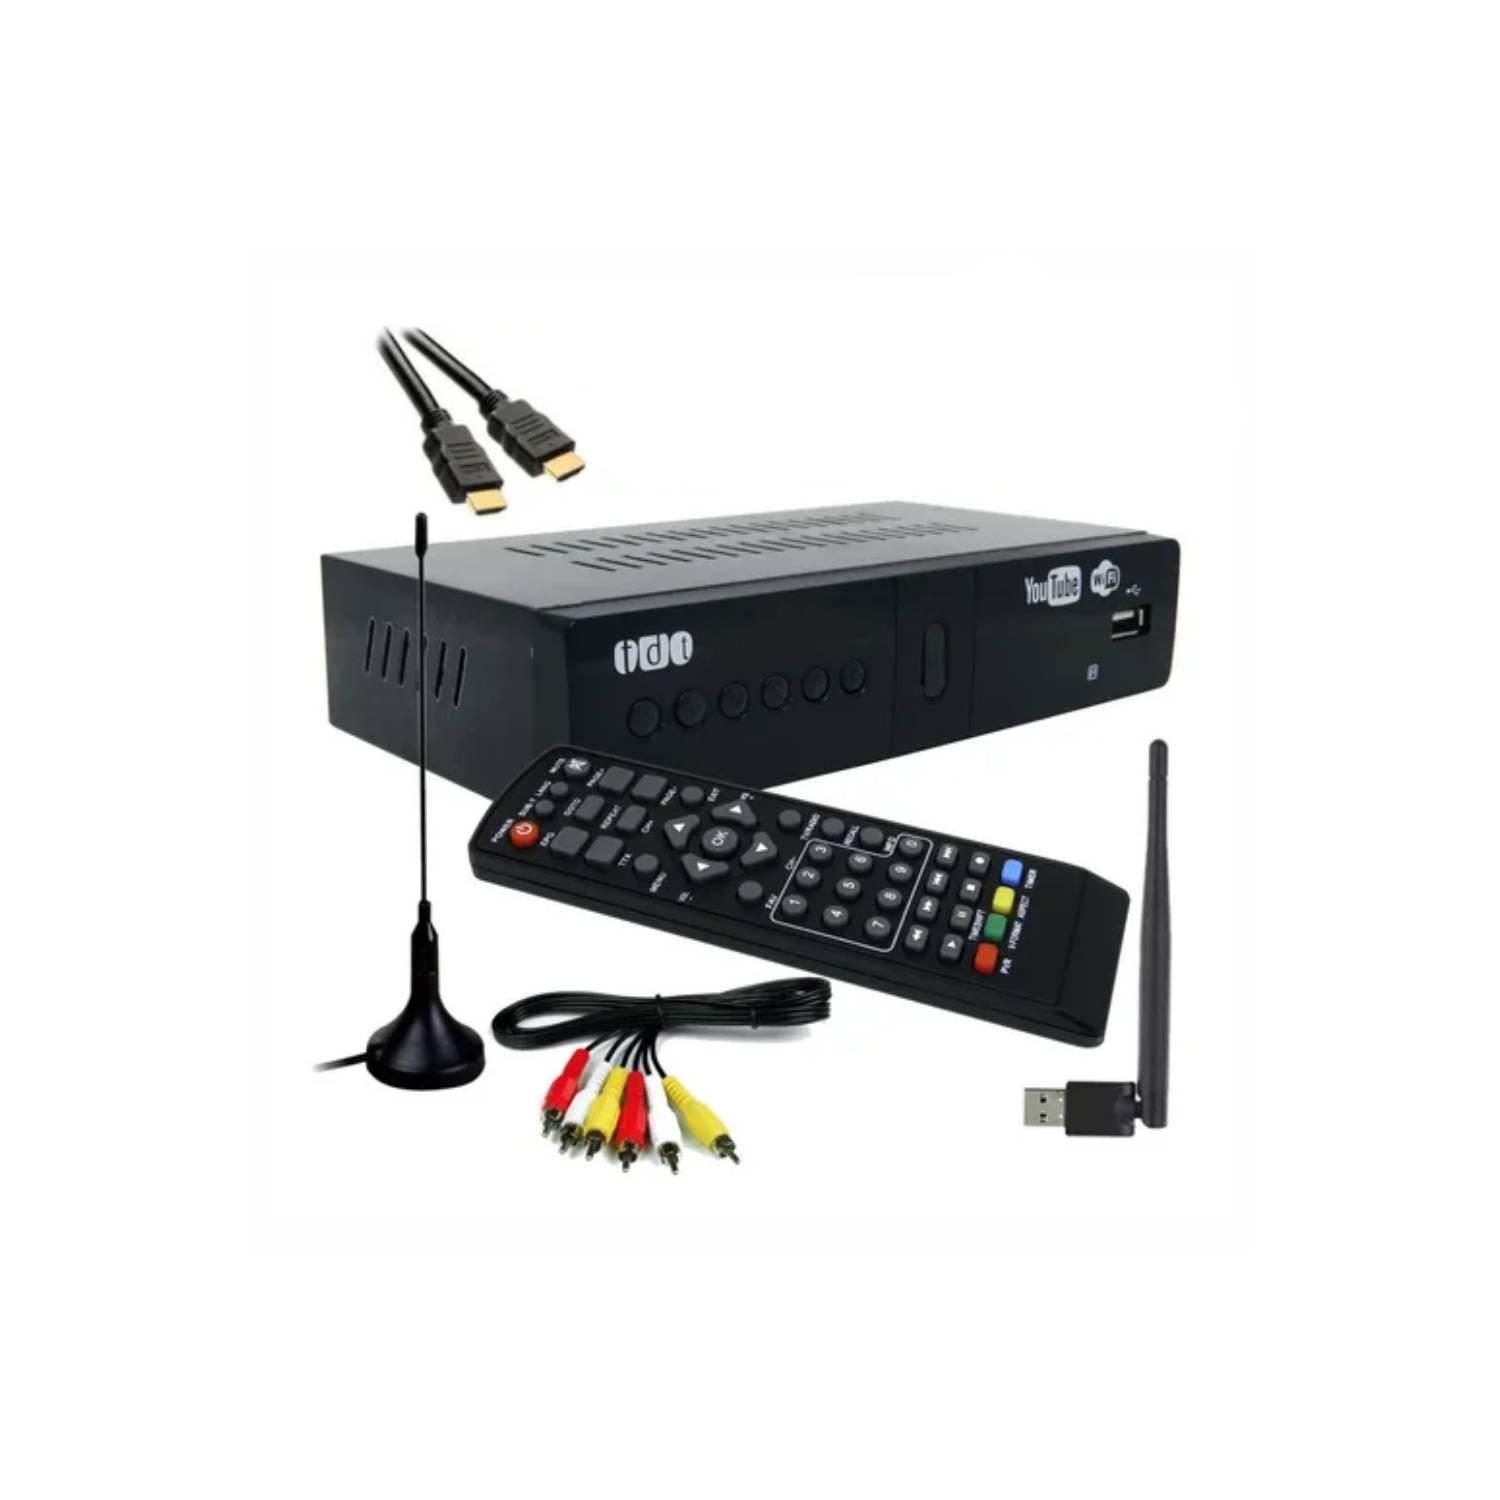 Decodificador Tdt Dvb - T2 Tv Digital + Cable Hdmi + Wifi